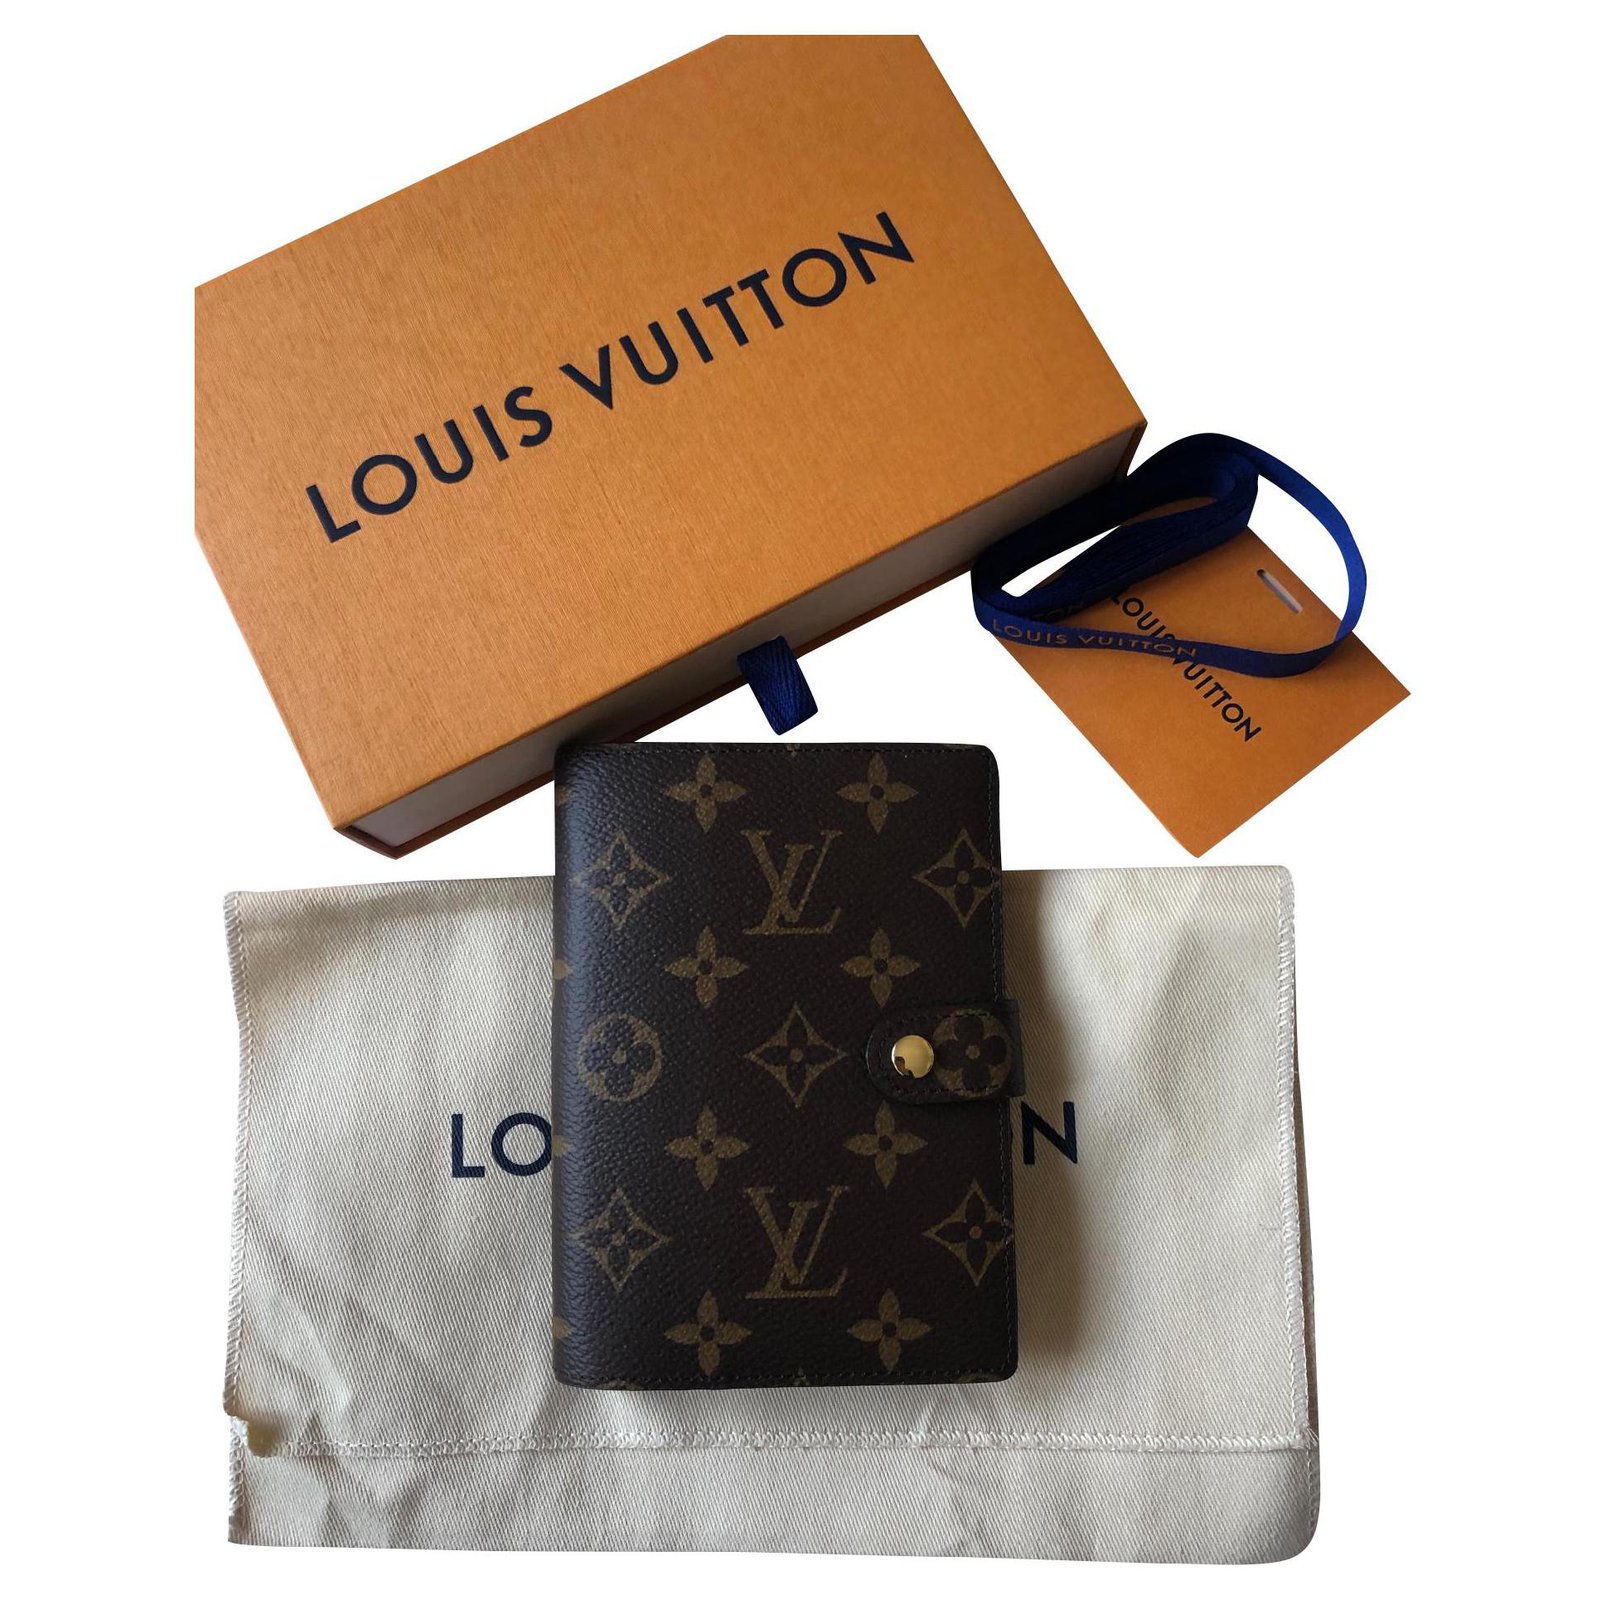 Louis Vuitton Agenda Cover 